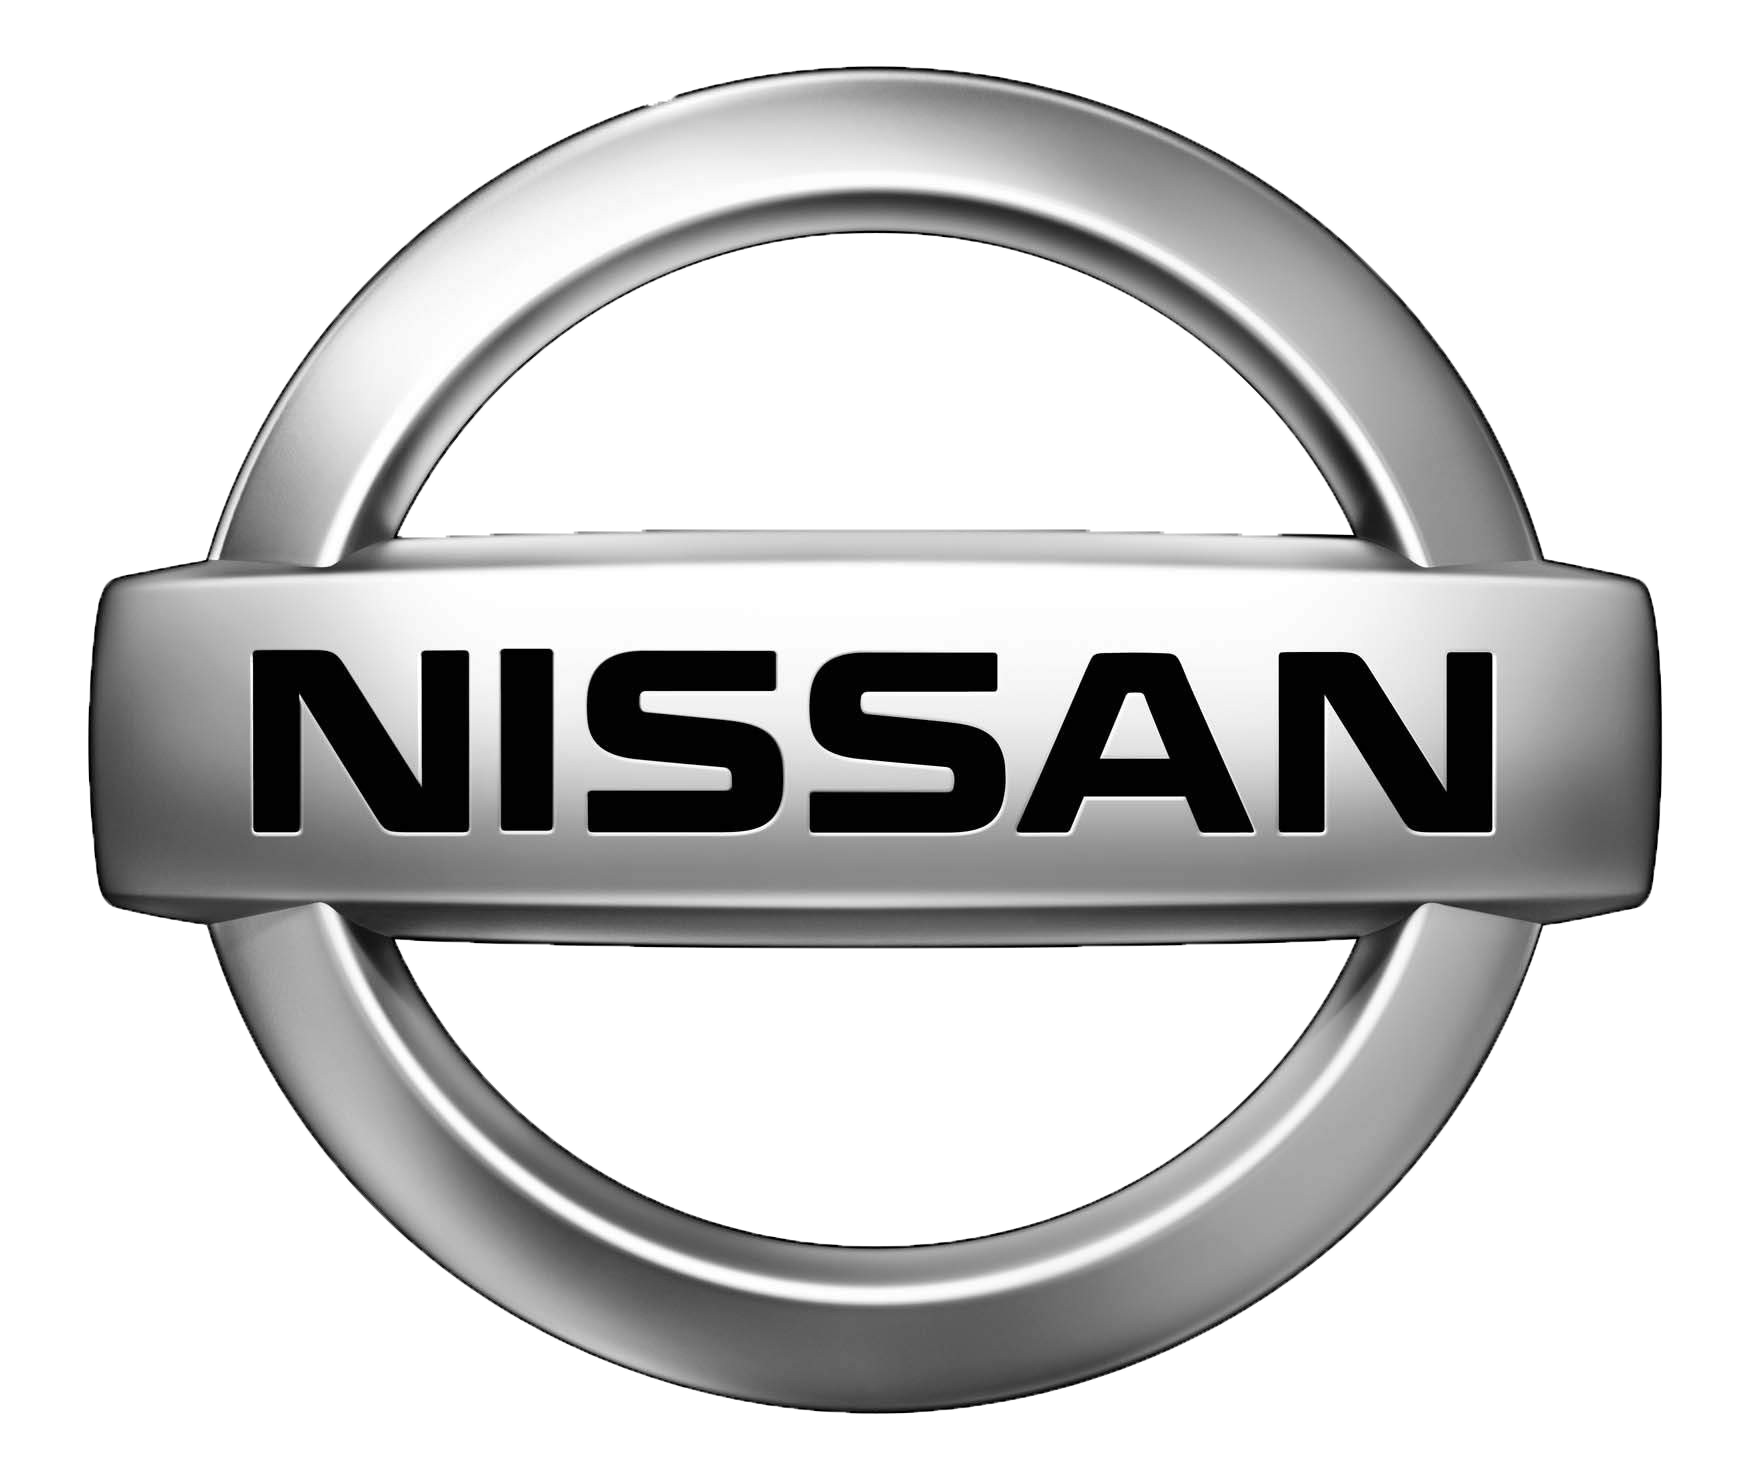 Nissan – Logos Download